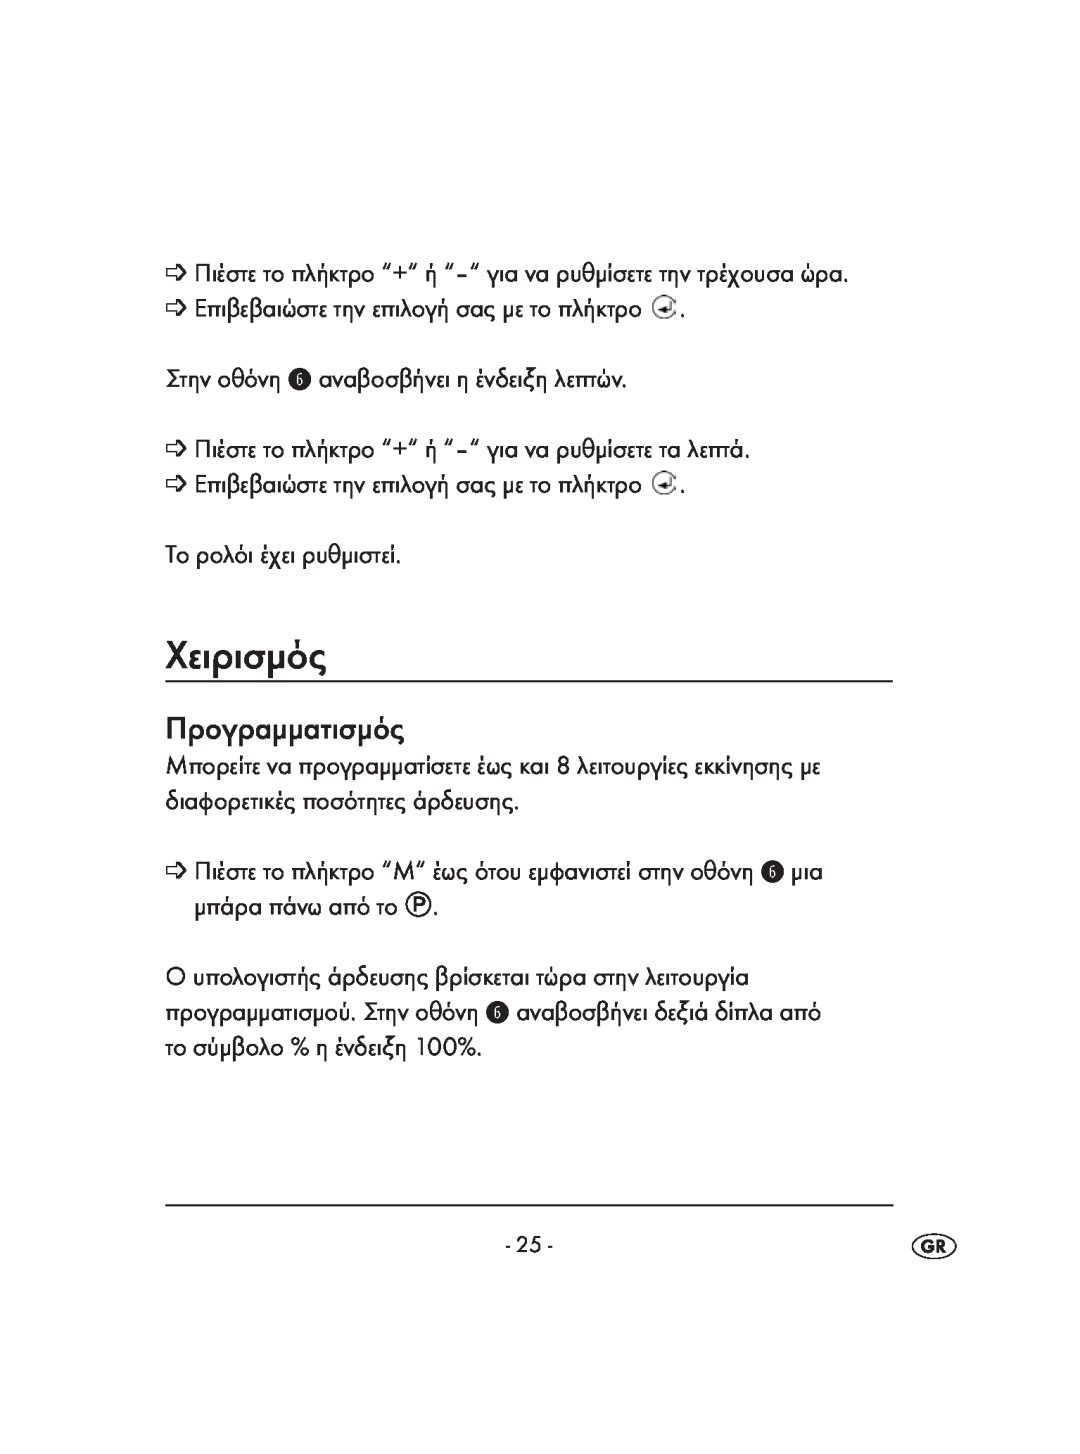 Kompernass KH 4083 manual Χειρισμός, Προγραμματισμός 